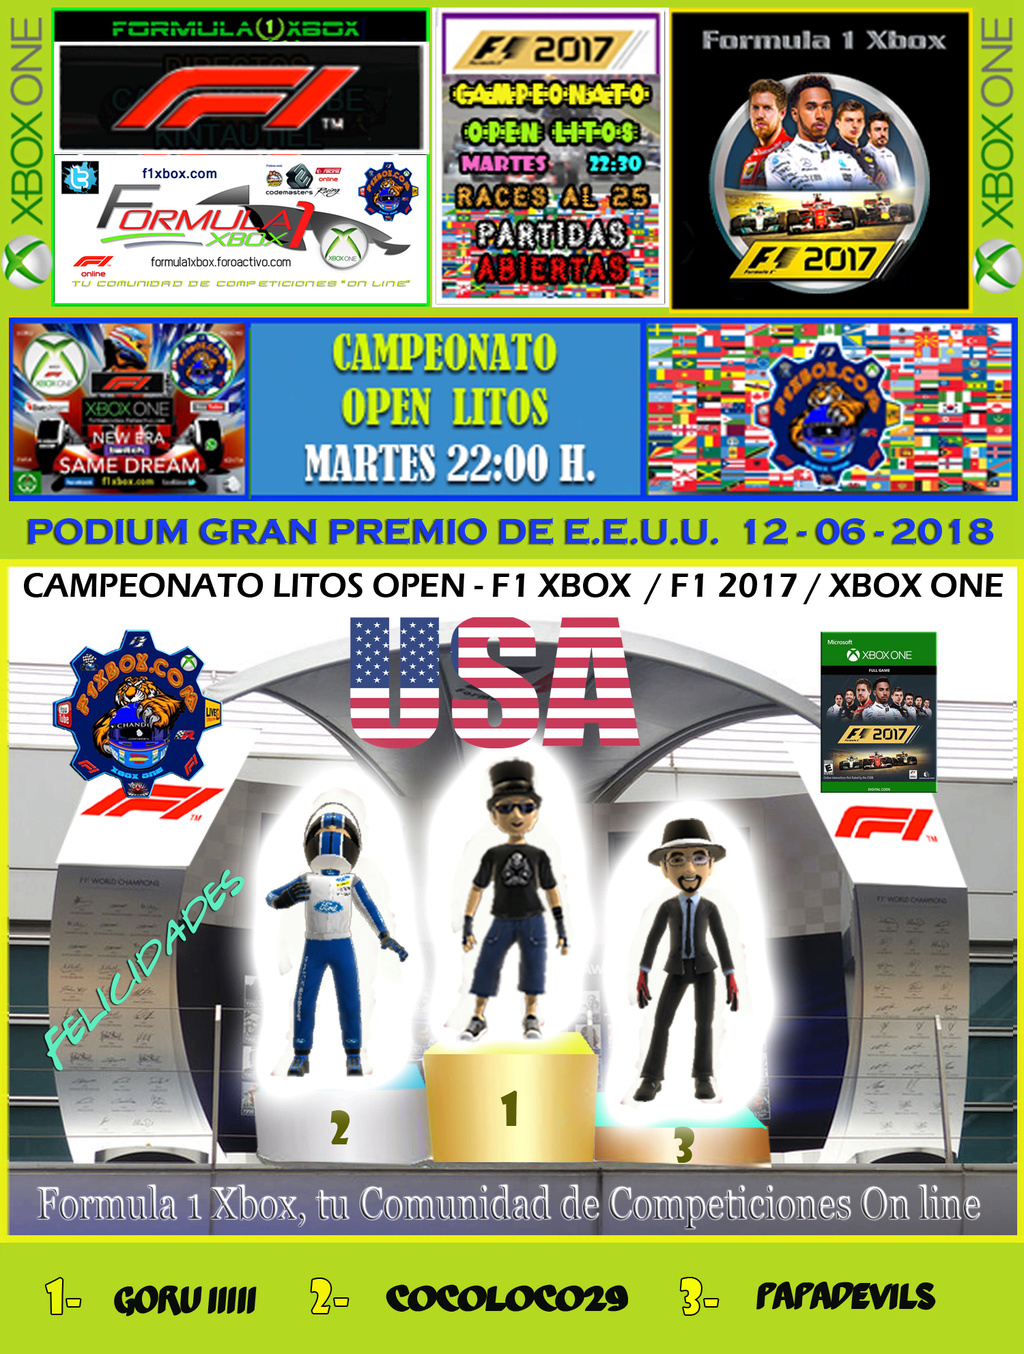 F1 2017 - XBOX ONE / CAMPEONATO OPEN LITOS - F1 XBOX / RESULTADOS Y PODIUM / G.P. DE RUSIA + GP DE E.E.U.U. / MARTES 12 - 06 - 2018. Podium12